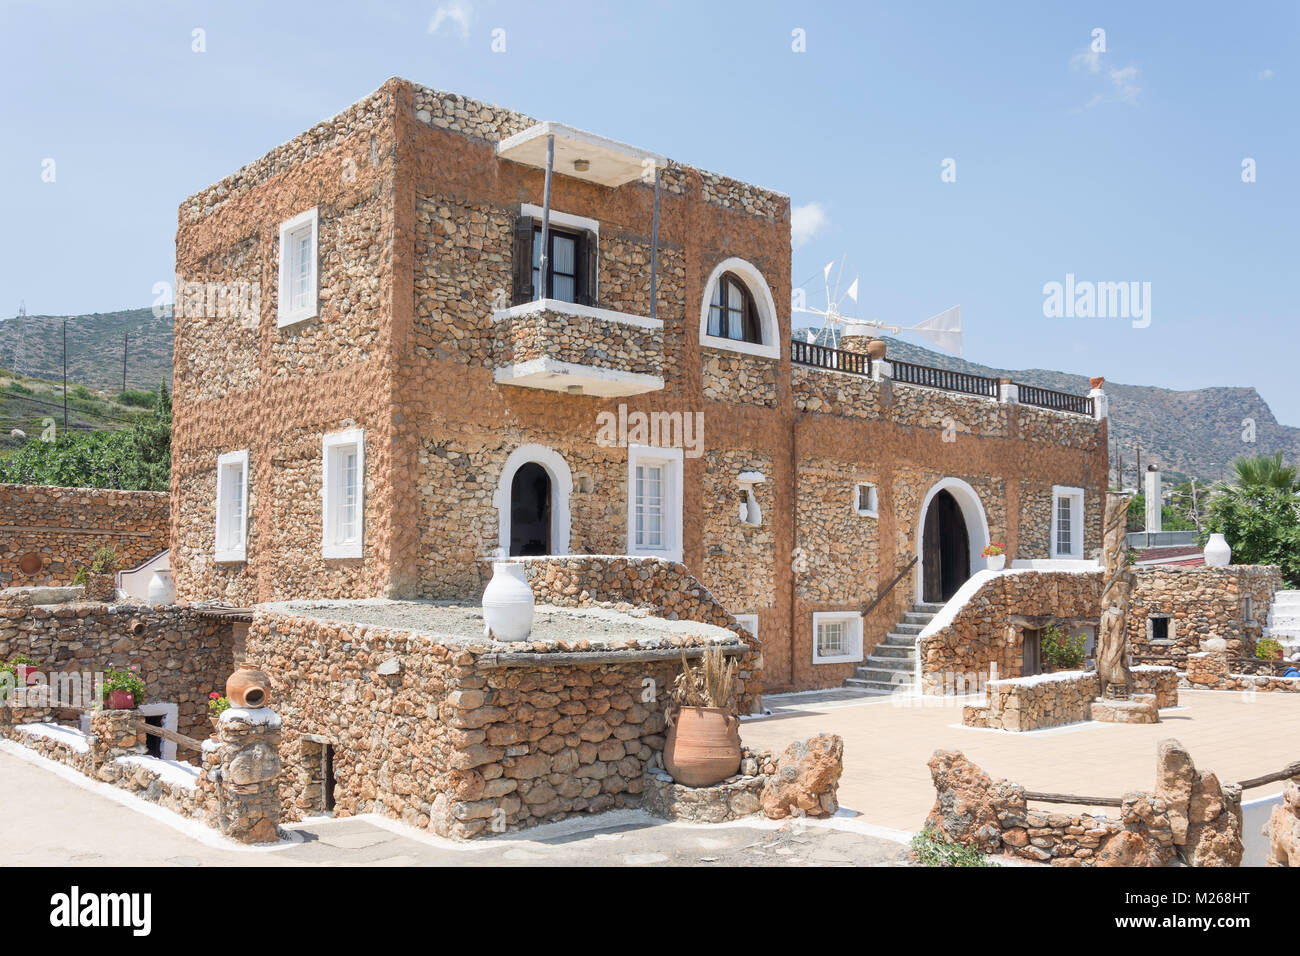 Maison typique crétois à Crète Lychnostatis Open Air Museum, Hersonissos, Crète (Héraklion, Région Crète, Grèce) Banque D'Images